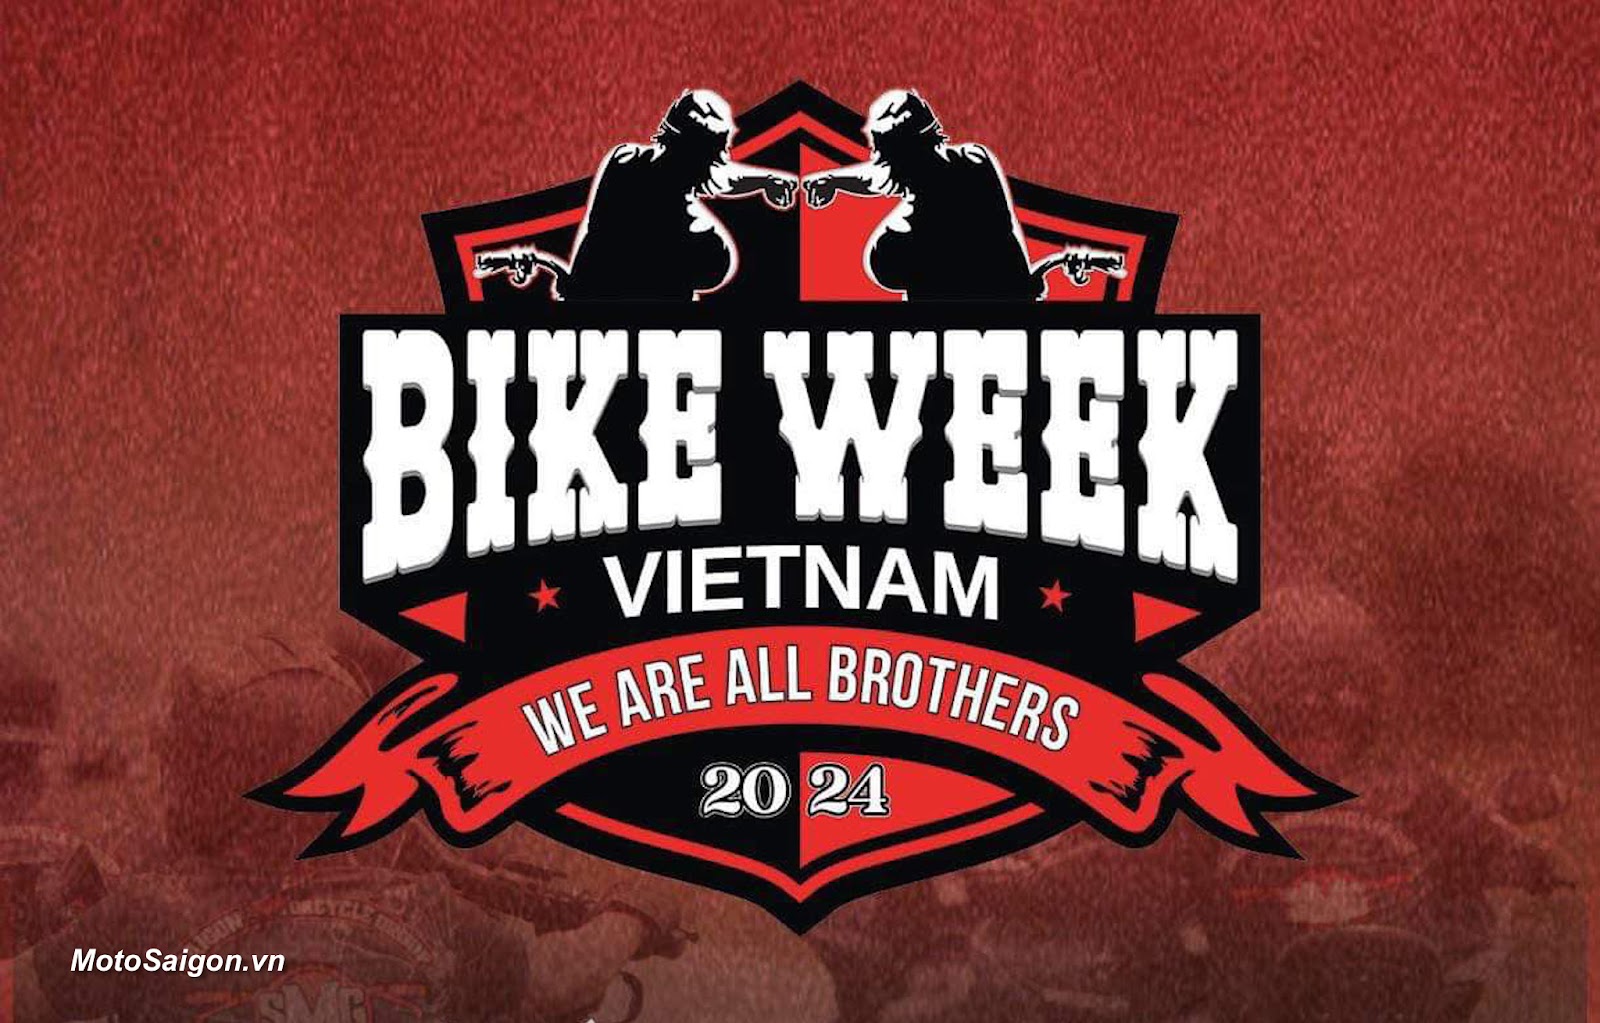 BIKE WEEK 2024 lần thứ 2 sẽ diễn ra tại Cam Ranh quy tụ hàng ngàn biker